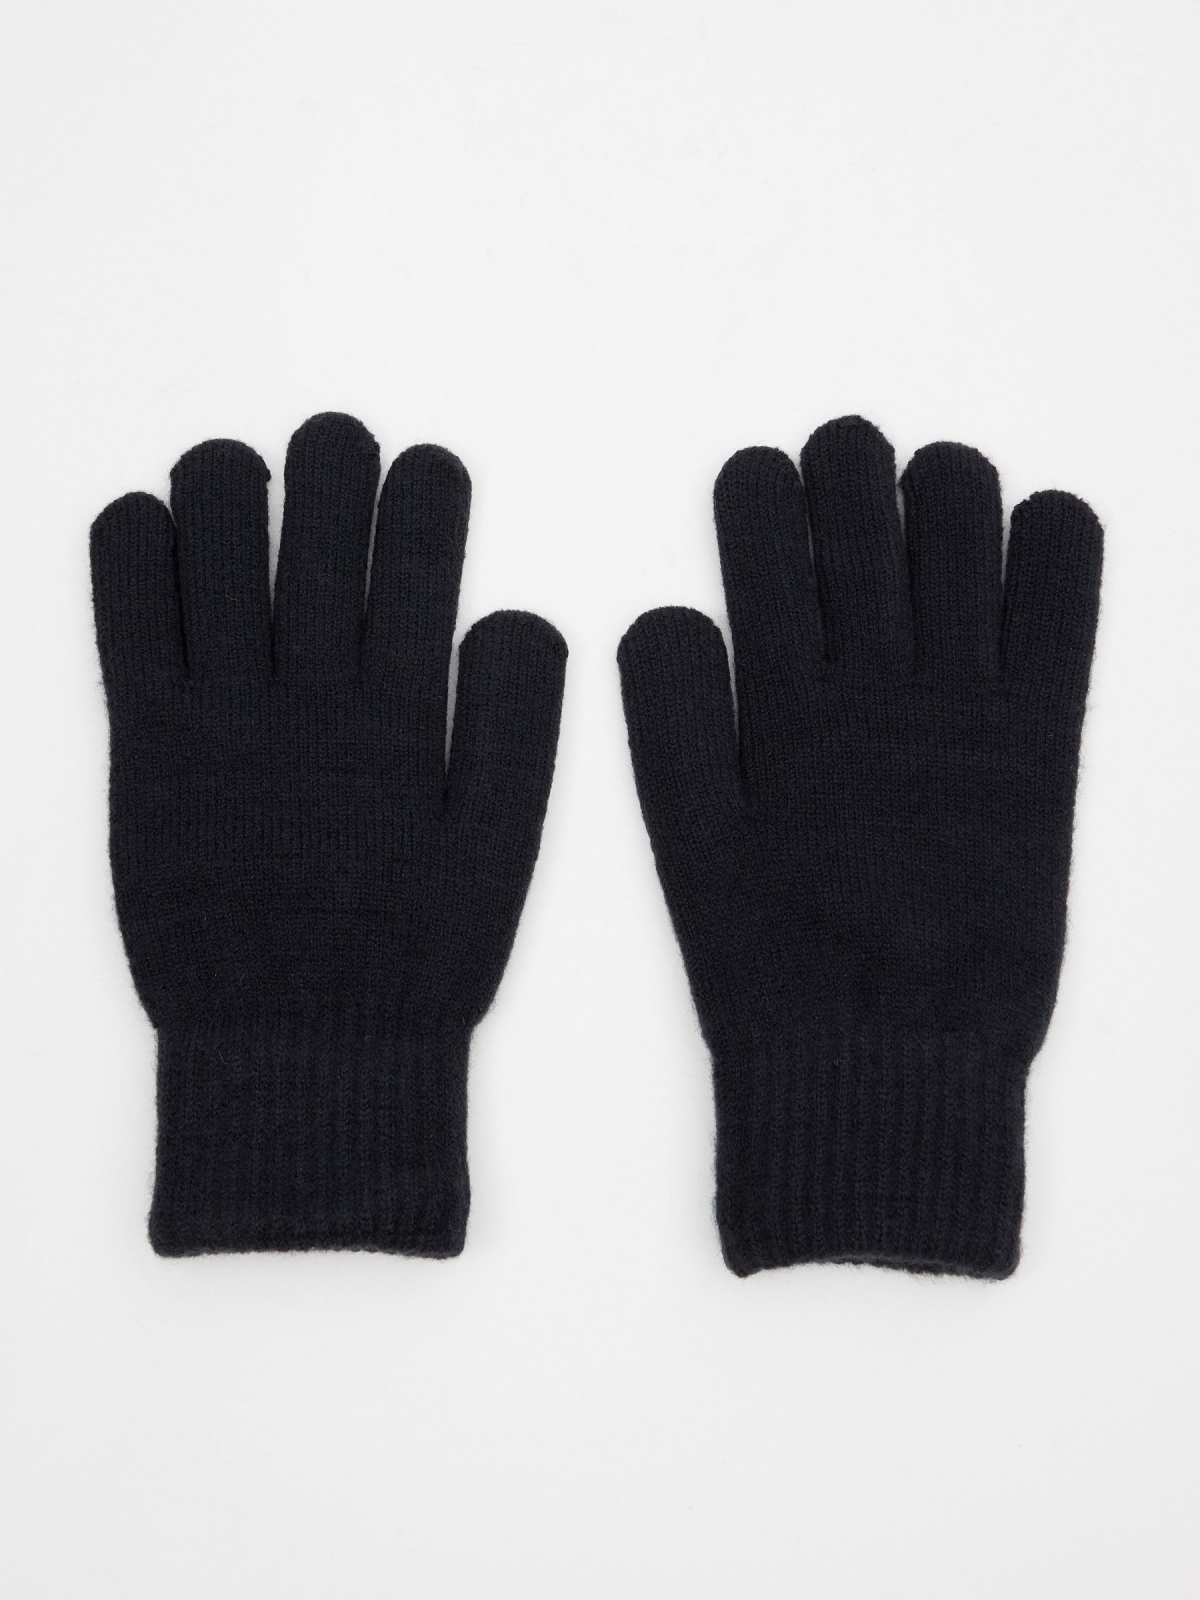 Brand embroidered gloves dark blue detail view